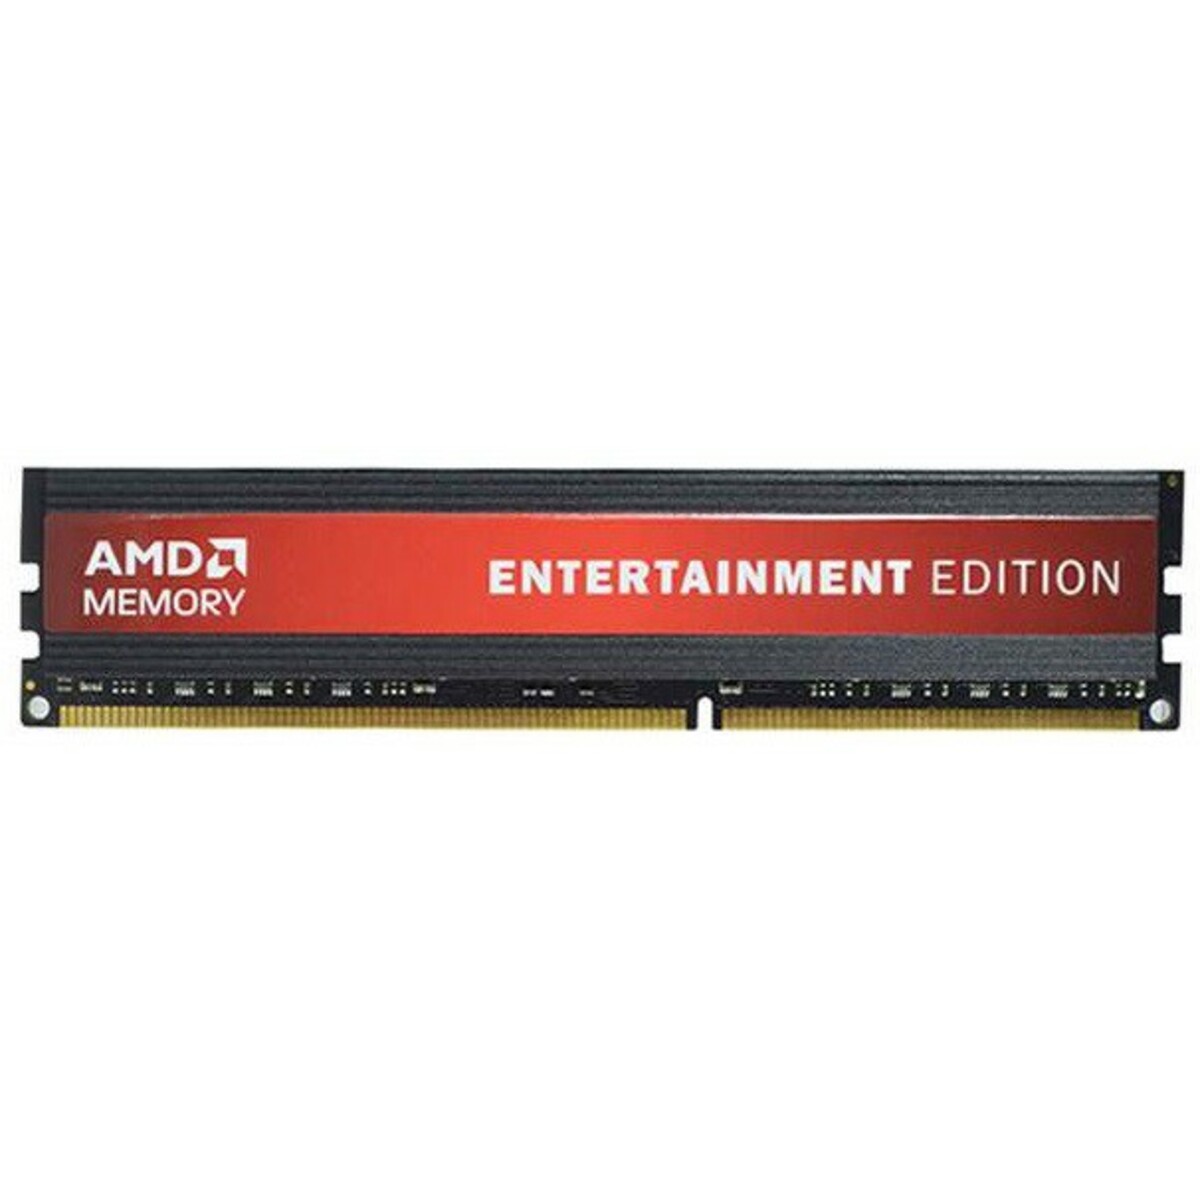 Память DDR3 8Gb 1600MHz AMD R538G1601U2S-UO